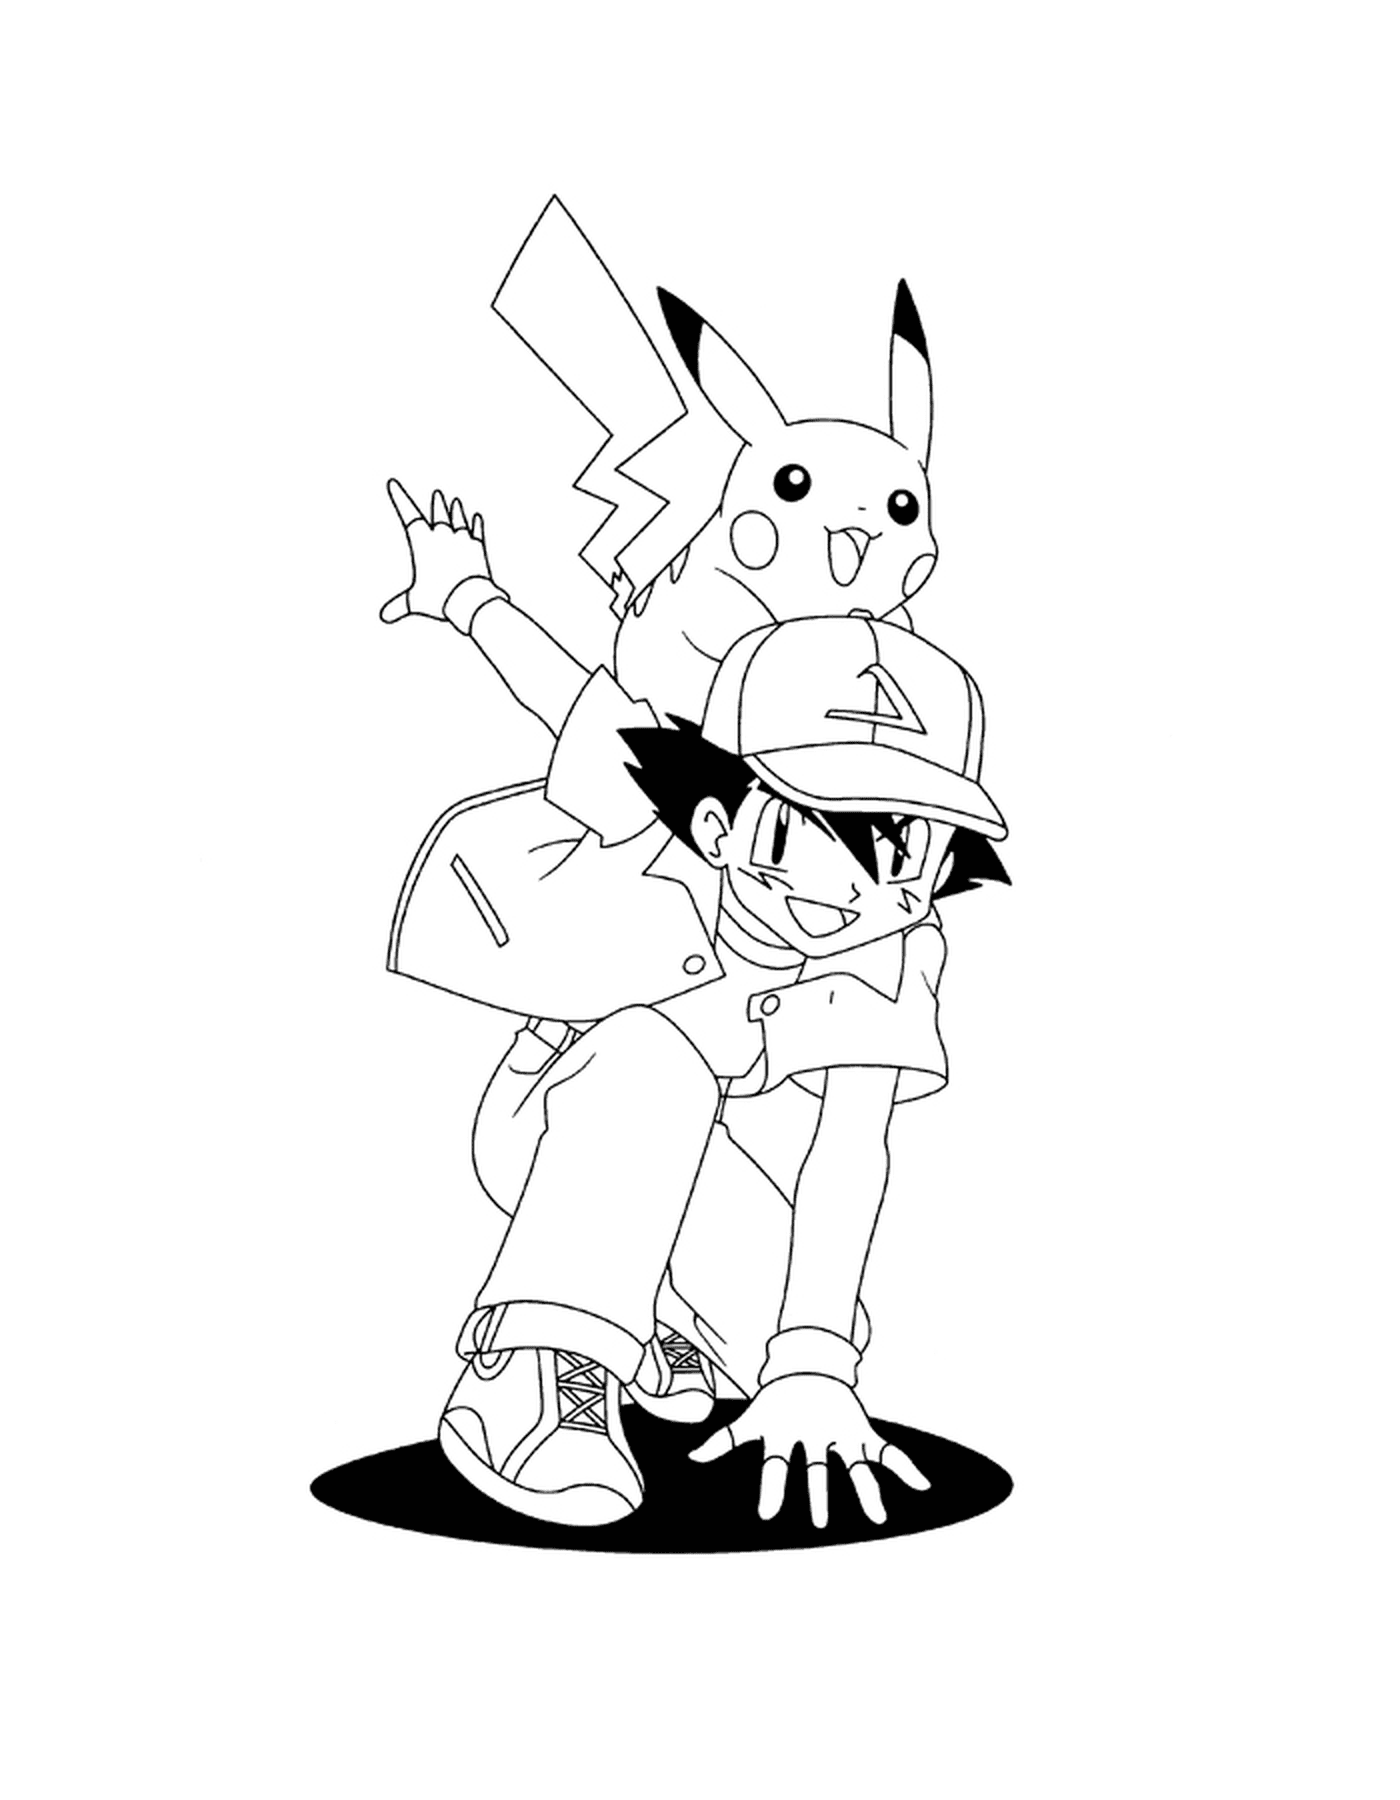  Sacha llevando a Pikachu en su espalda 